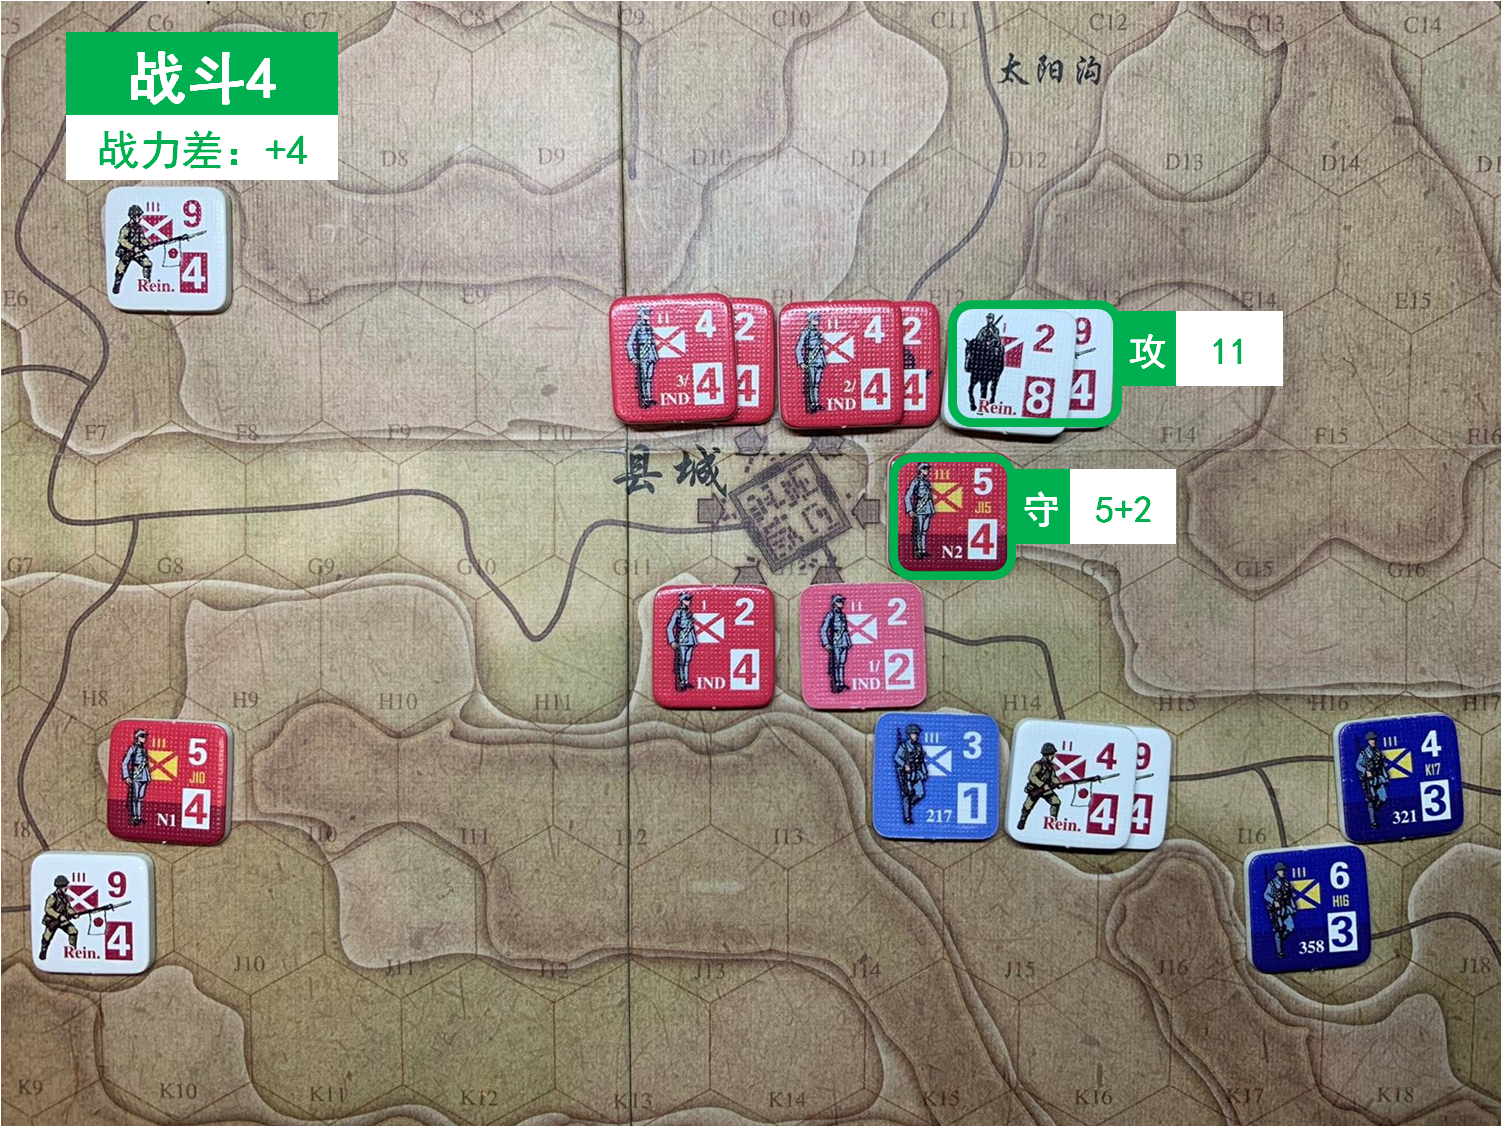 第五回合 日方战斗阶段 战斗4 战斗力差值